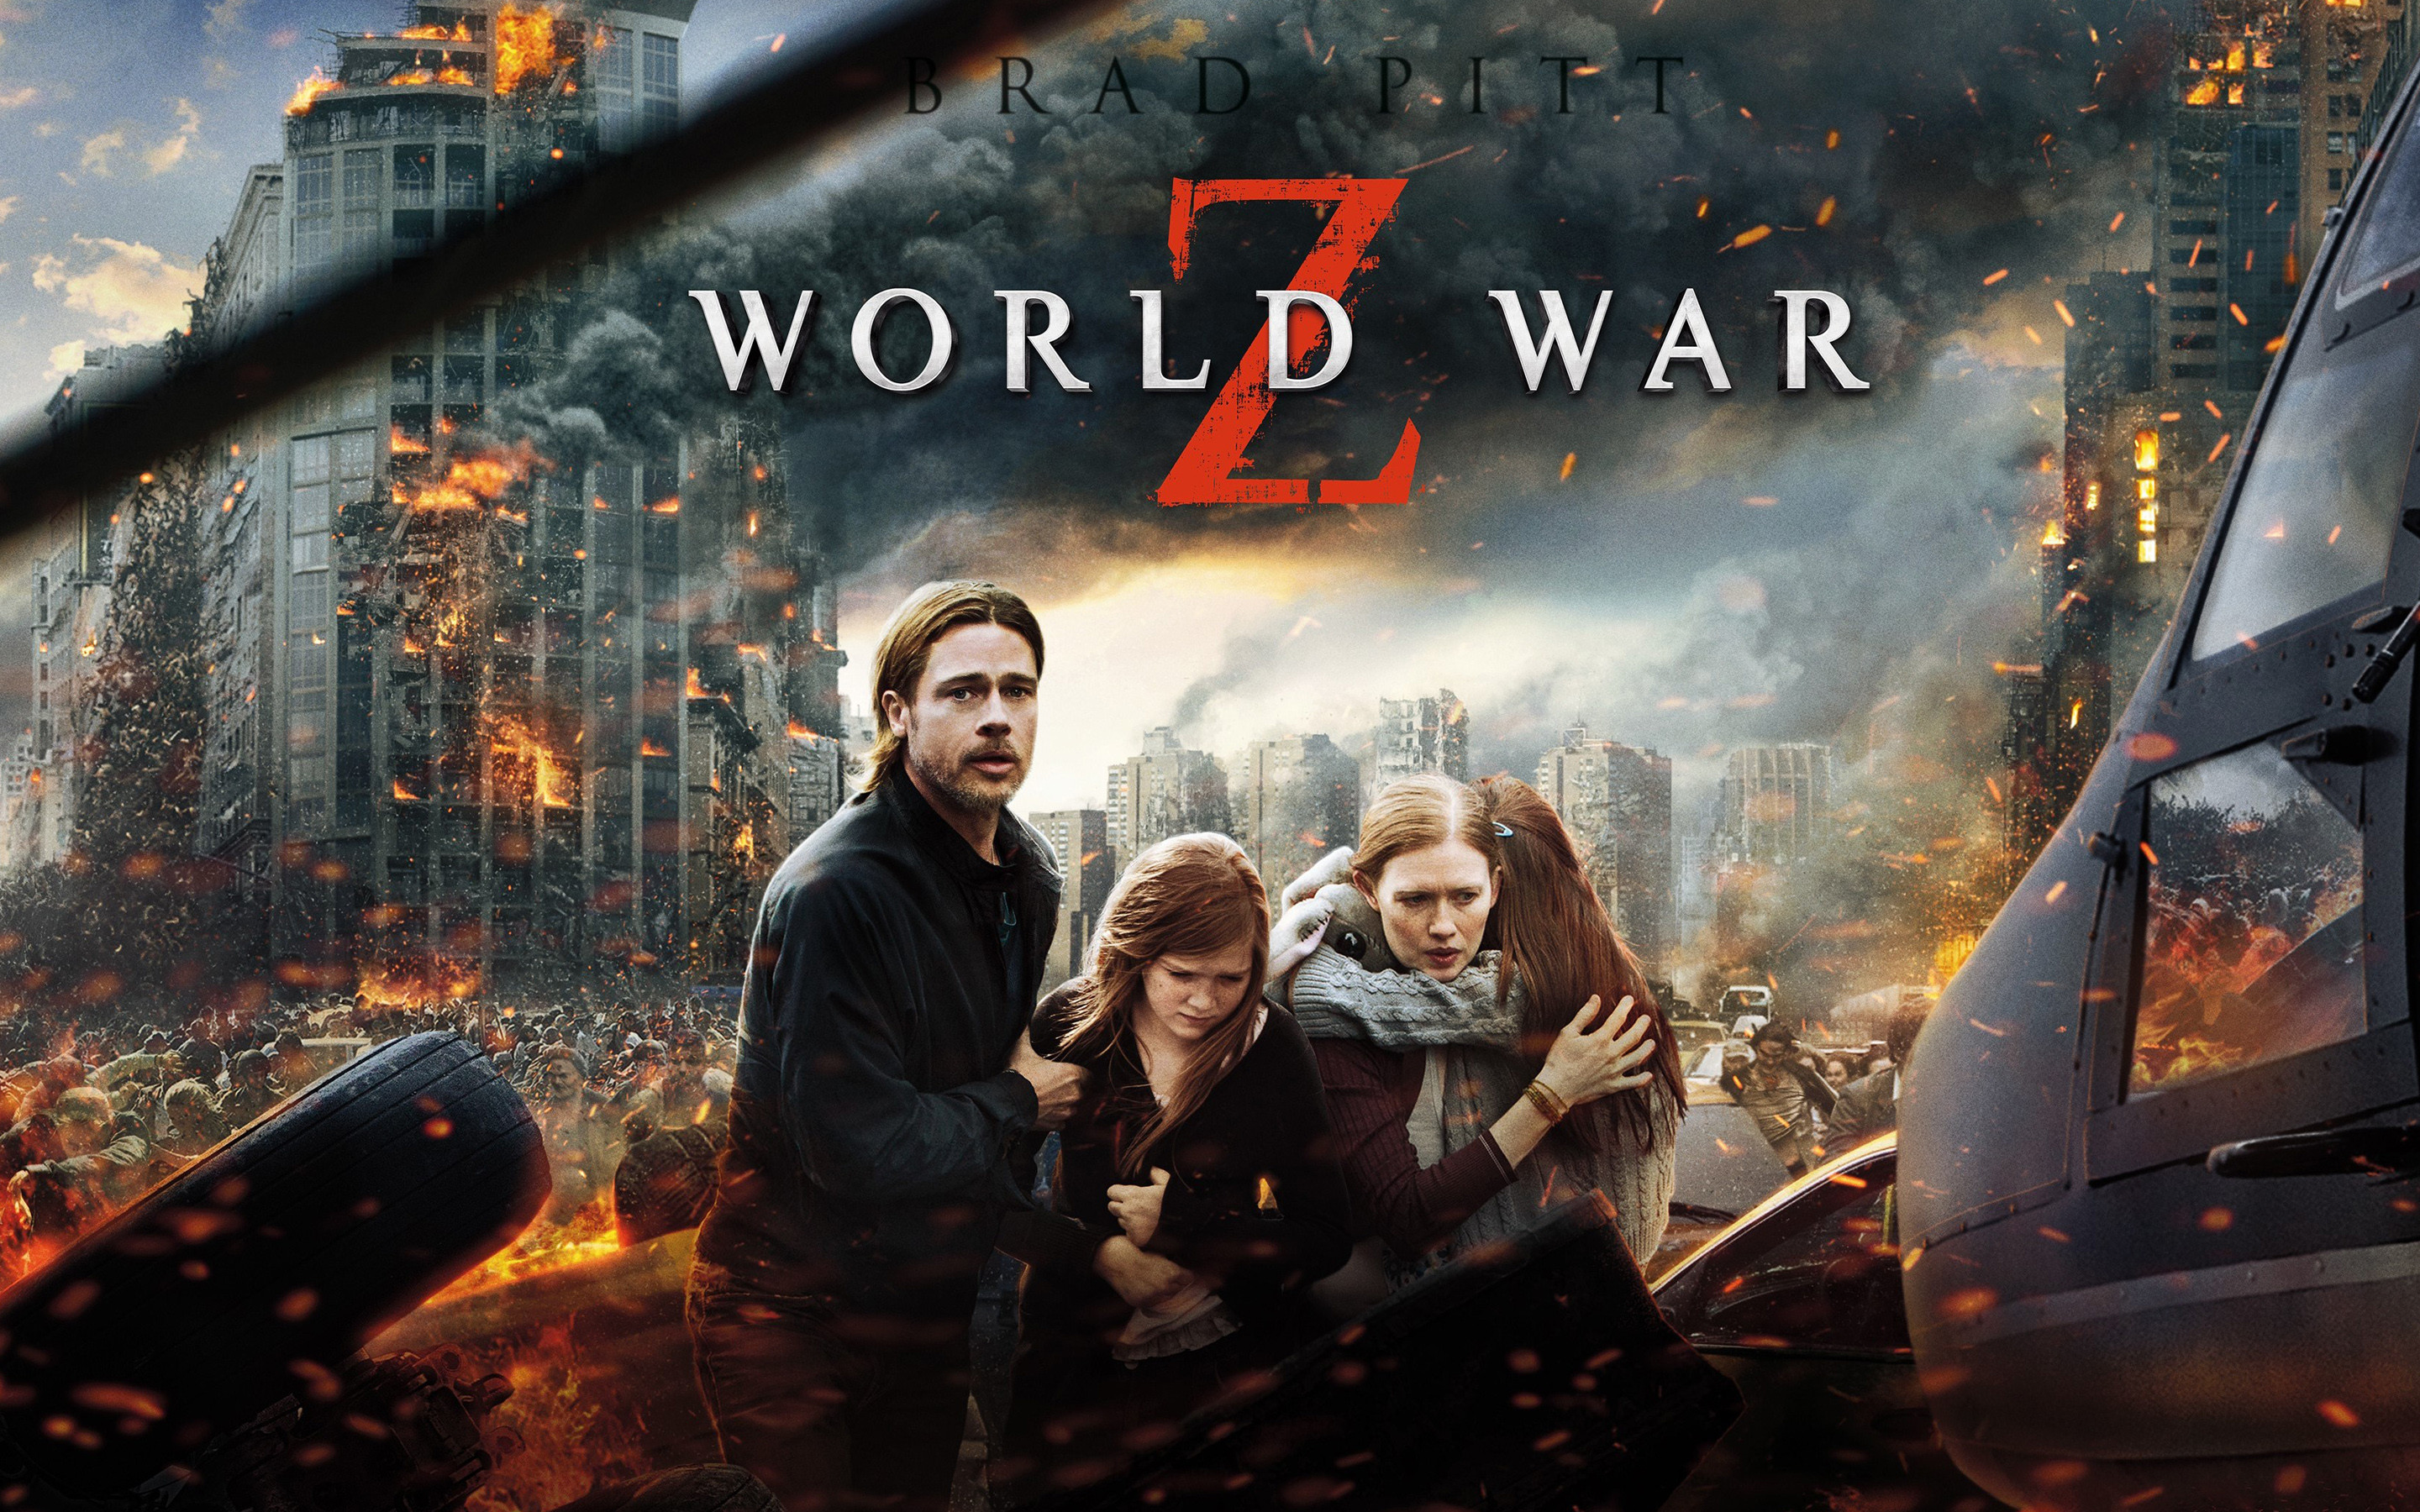 World War Z Htc One Wallpaper - World War Z 2013 Unrated Cut , HD Wallpaper & Backgrounds